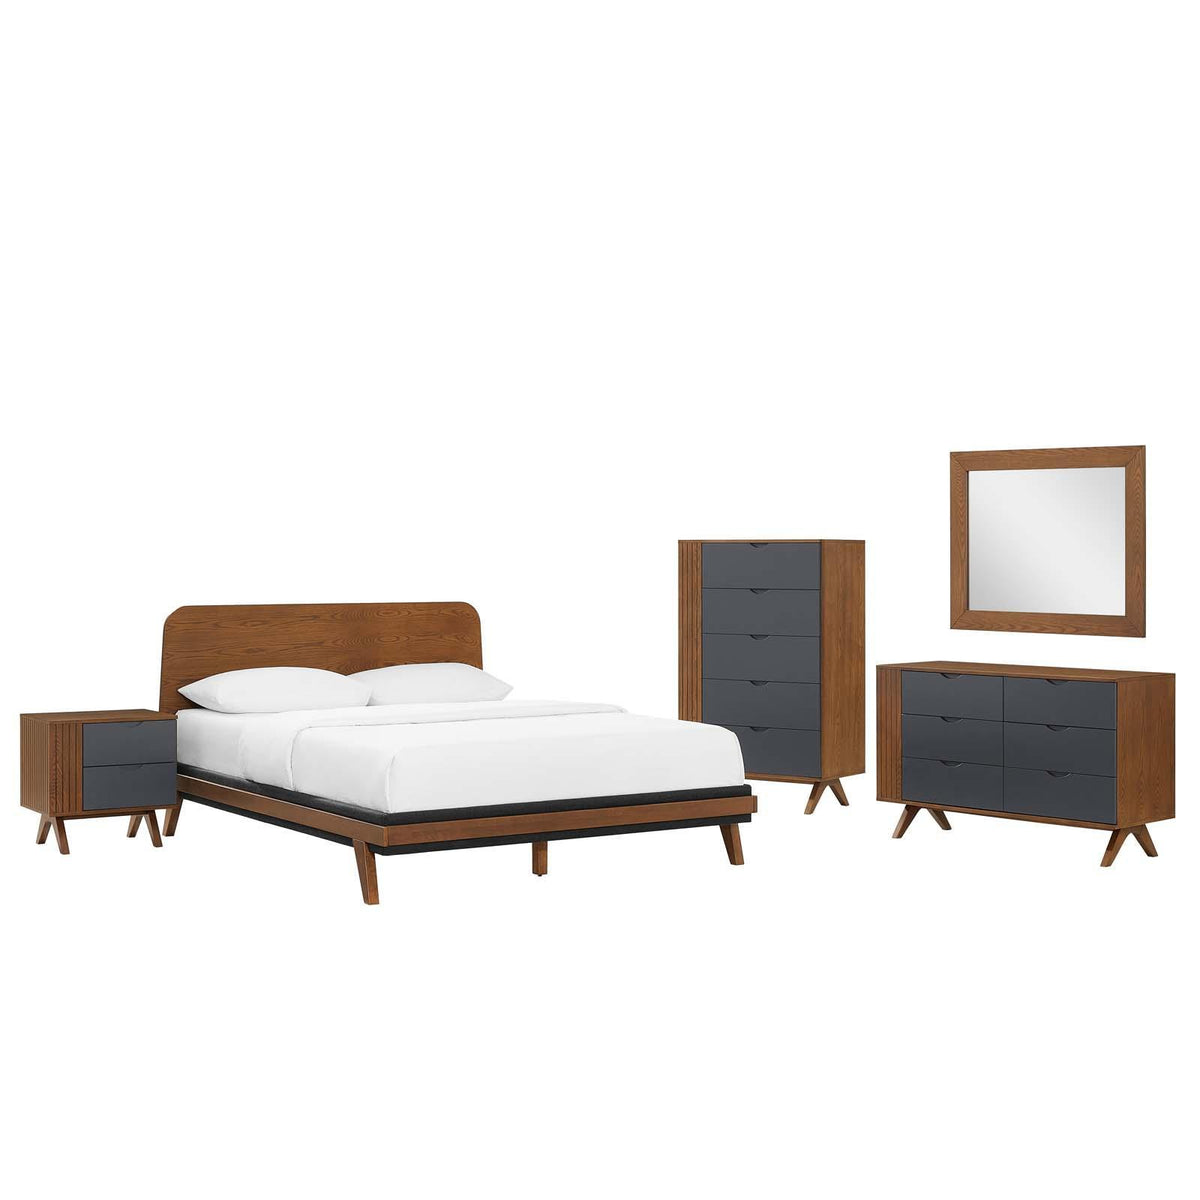 Modway Furniture Modern Dylan 5 Piece Bedroom Set - MOD-6958